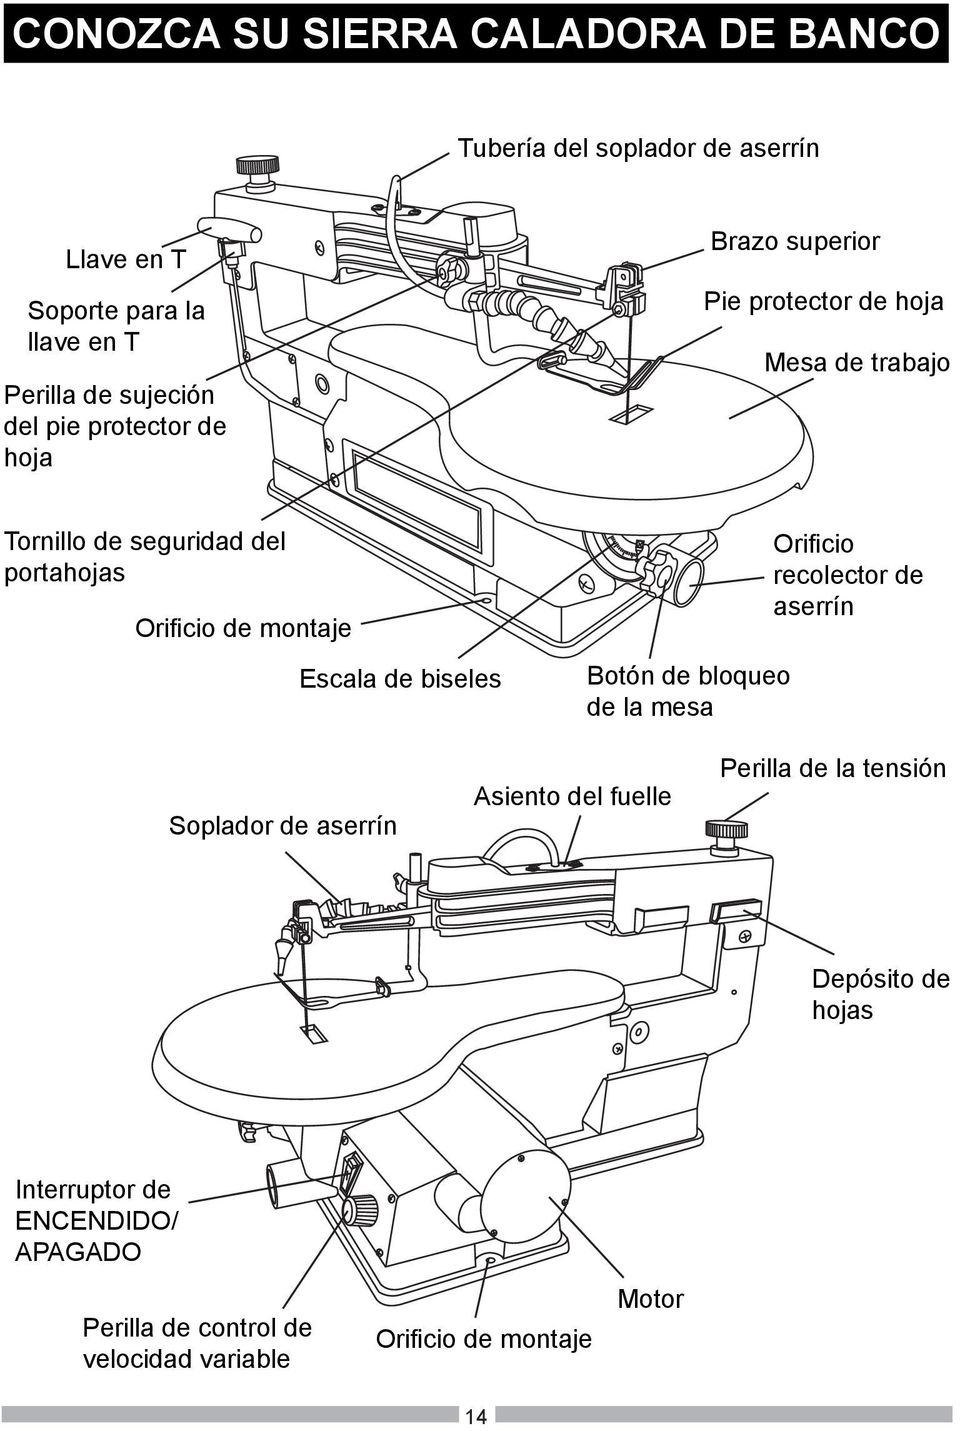 montaje Escala de biseles Botón de bloqueo de la mesa Orificio recolector de aserrín Soplador de aserrín Asiento del fuelle